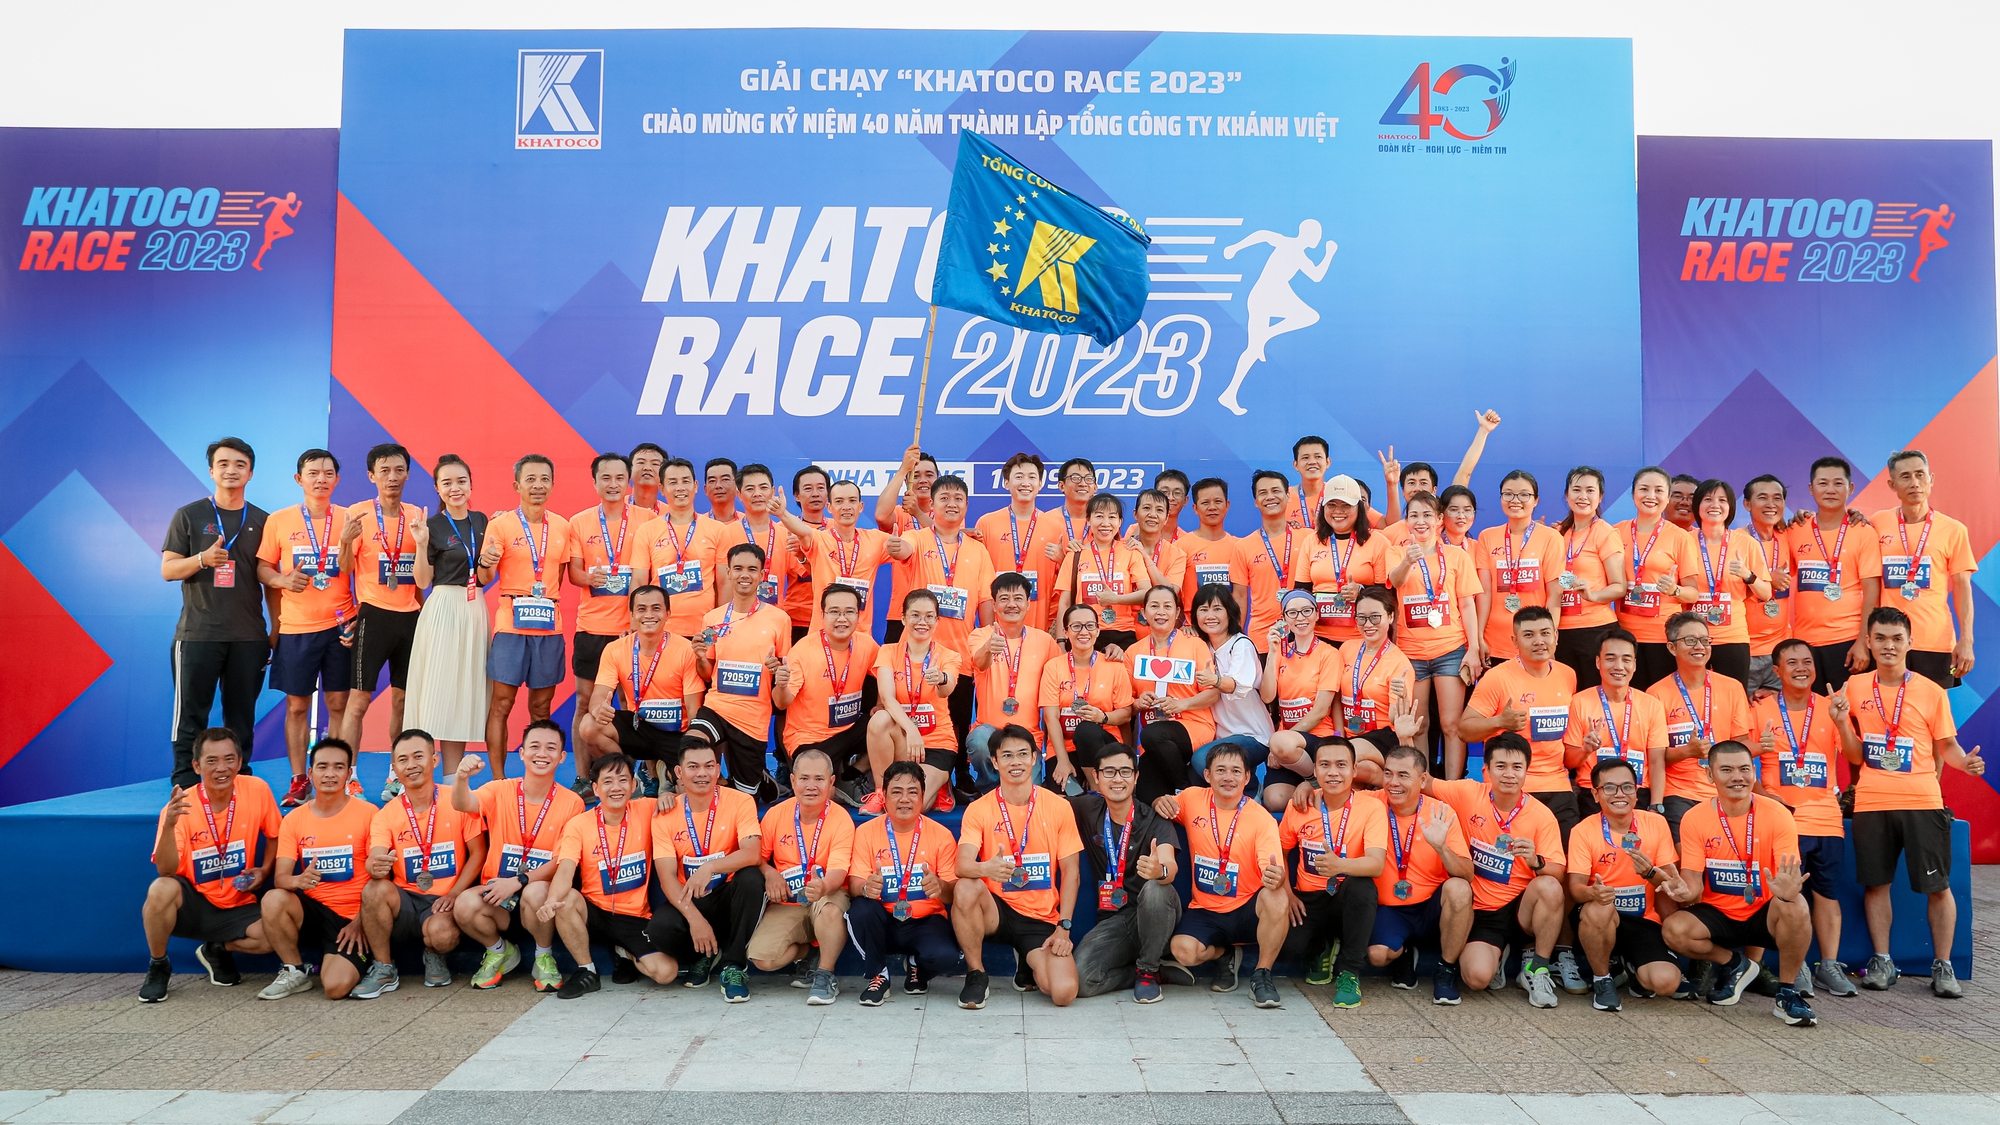 Giải chạy Khatoco Race 2023 thu hút hơn 1.300 vận động viên - Ảnh 12.